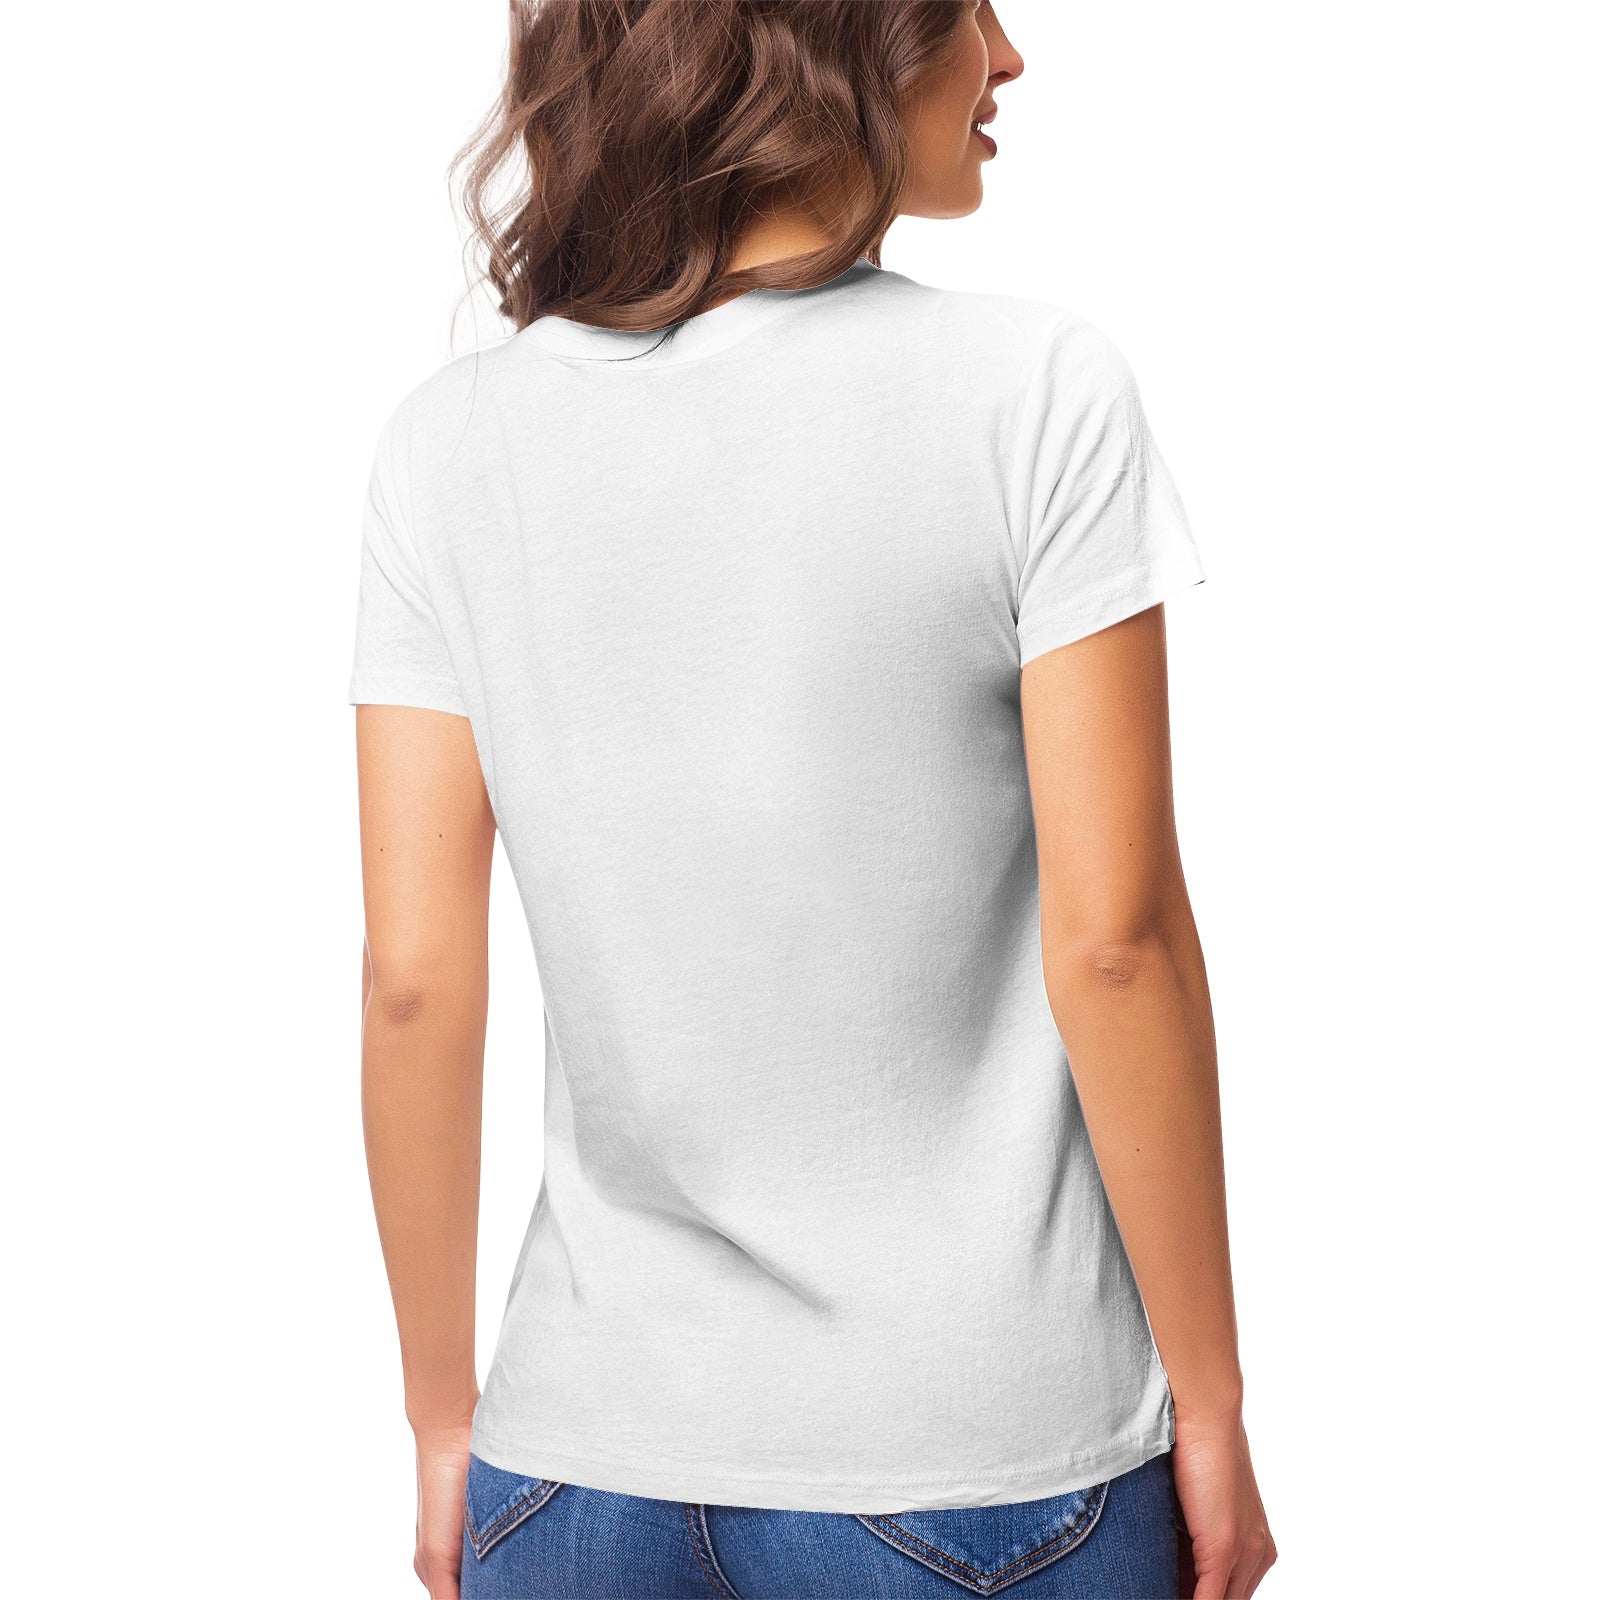 Yoga Cat 13 Women's Ultrasoft Pima Cotton T‑shirt - DromedarShop.com Online Boutique